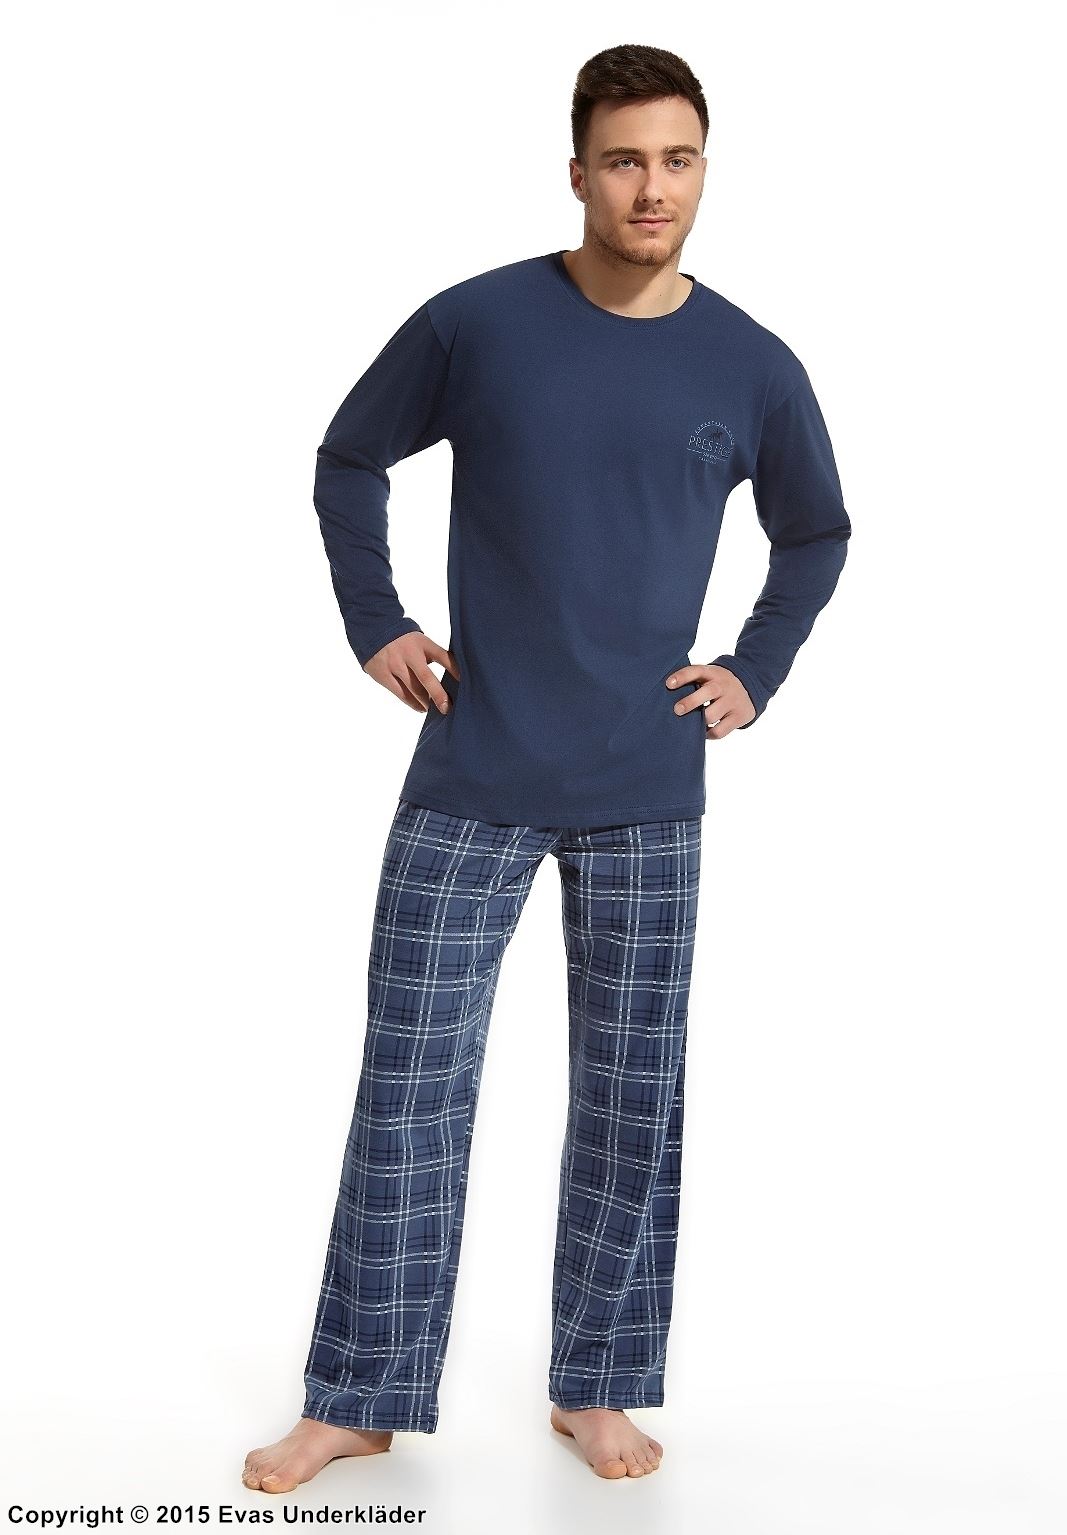 Blå pyjamas med emblem och rutiga byxor